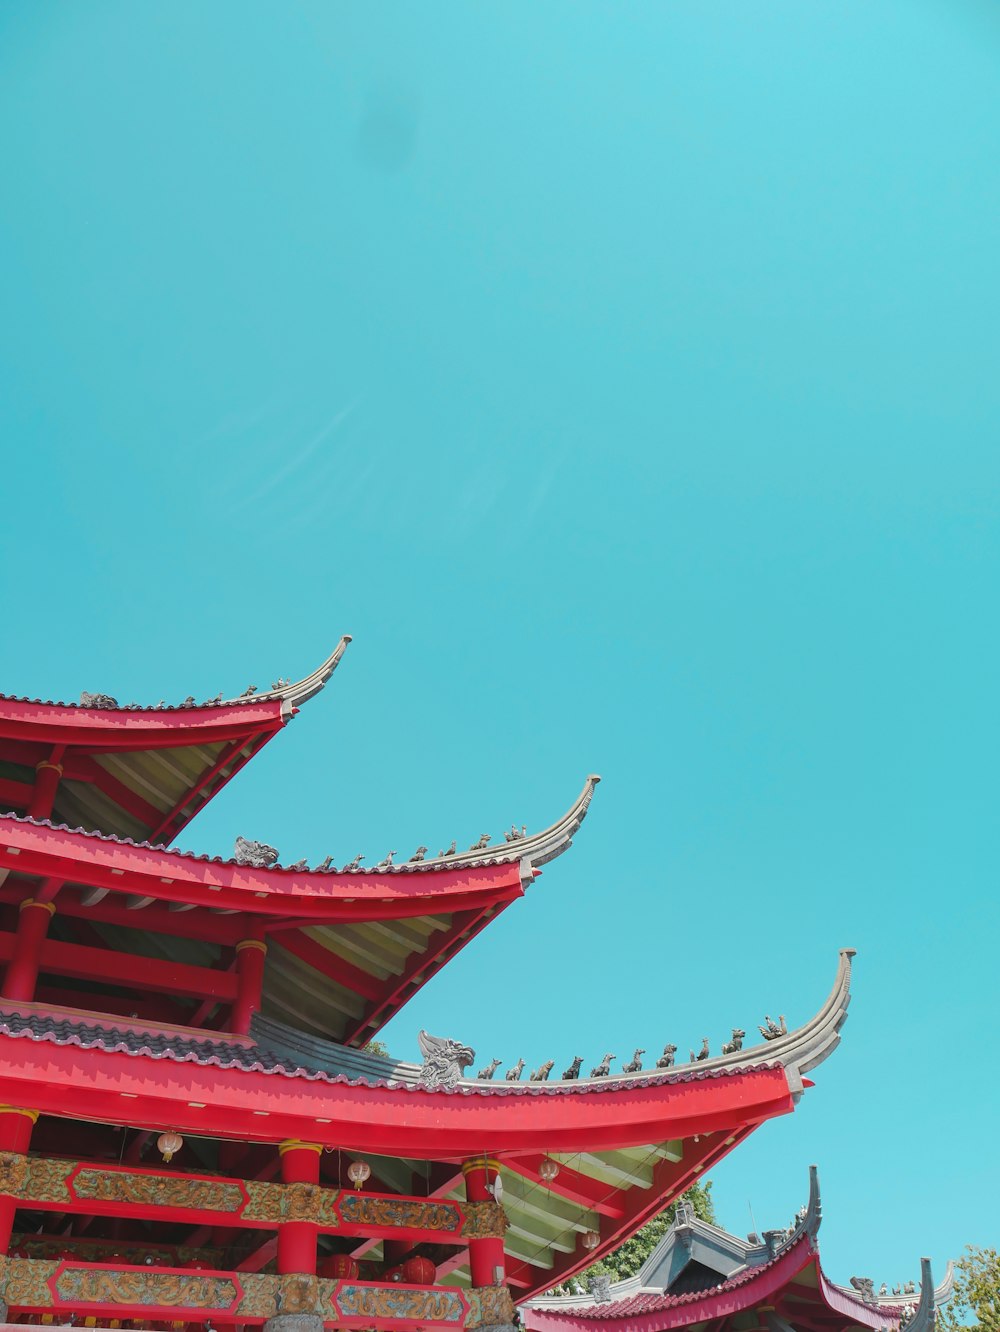 Photographie en contre-plongée d’un bâtiment de pagode rouge et vert sous un ciel bleu calme